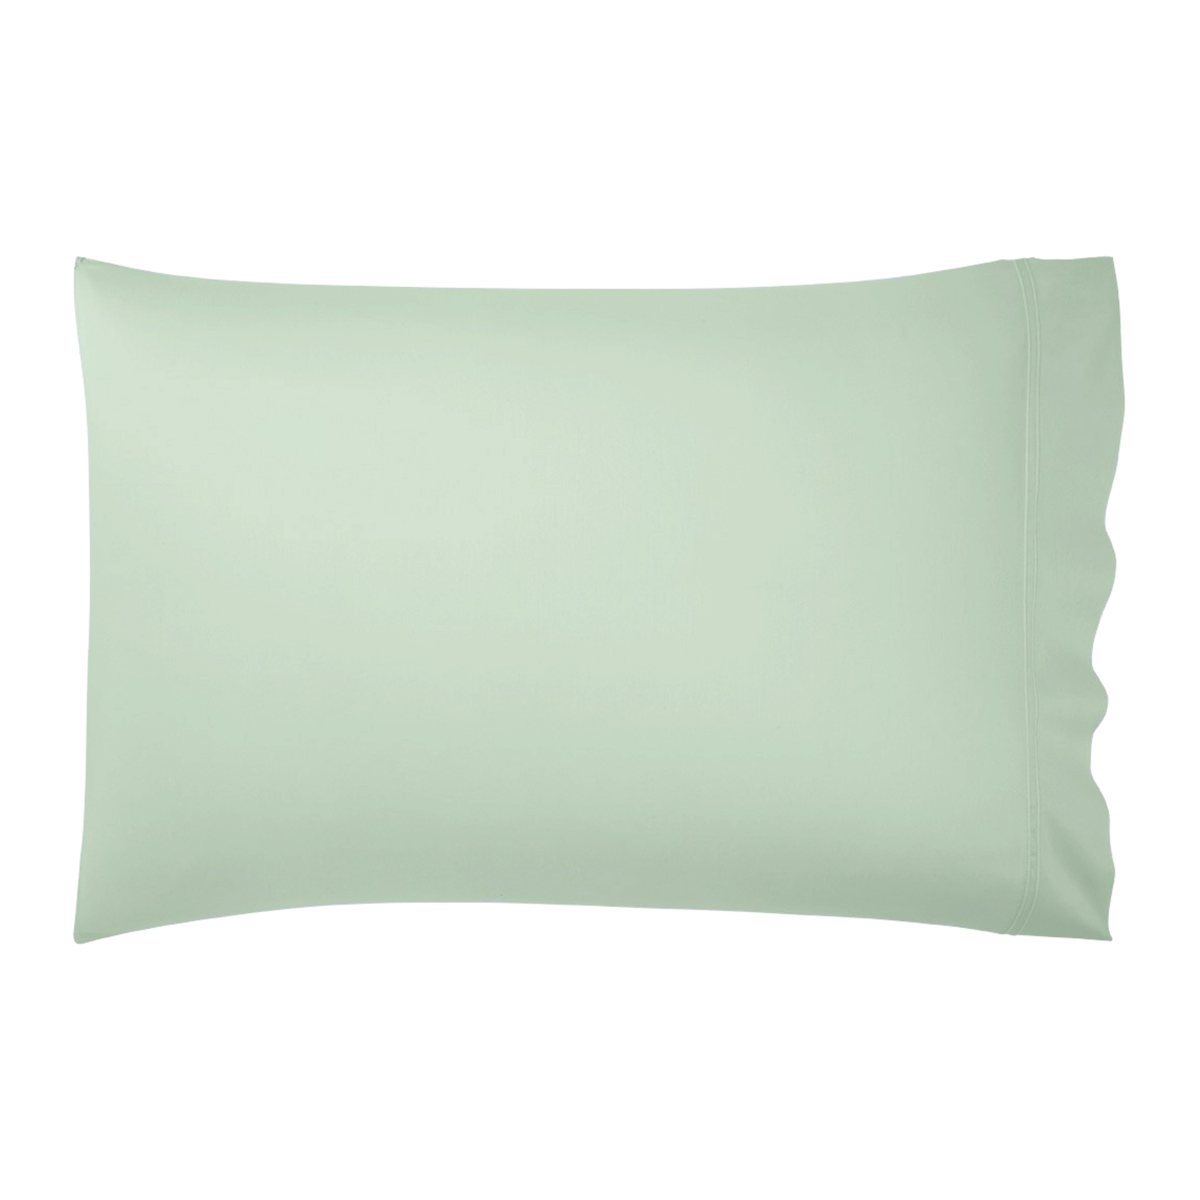 Pillowcase Silo of Veronese Color Yves Delorme Triomphe Bedding